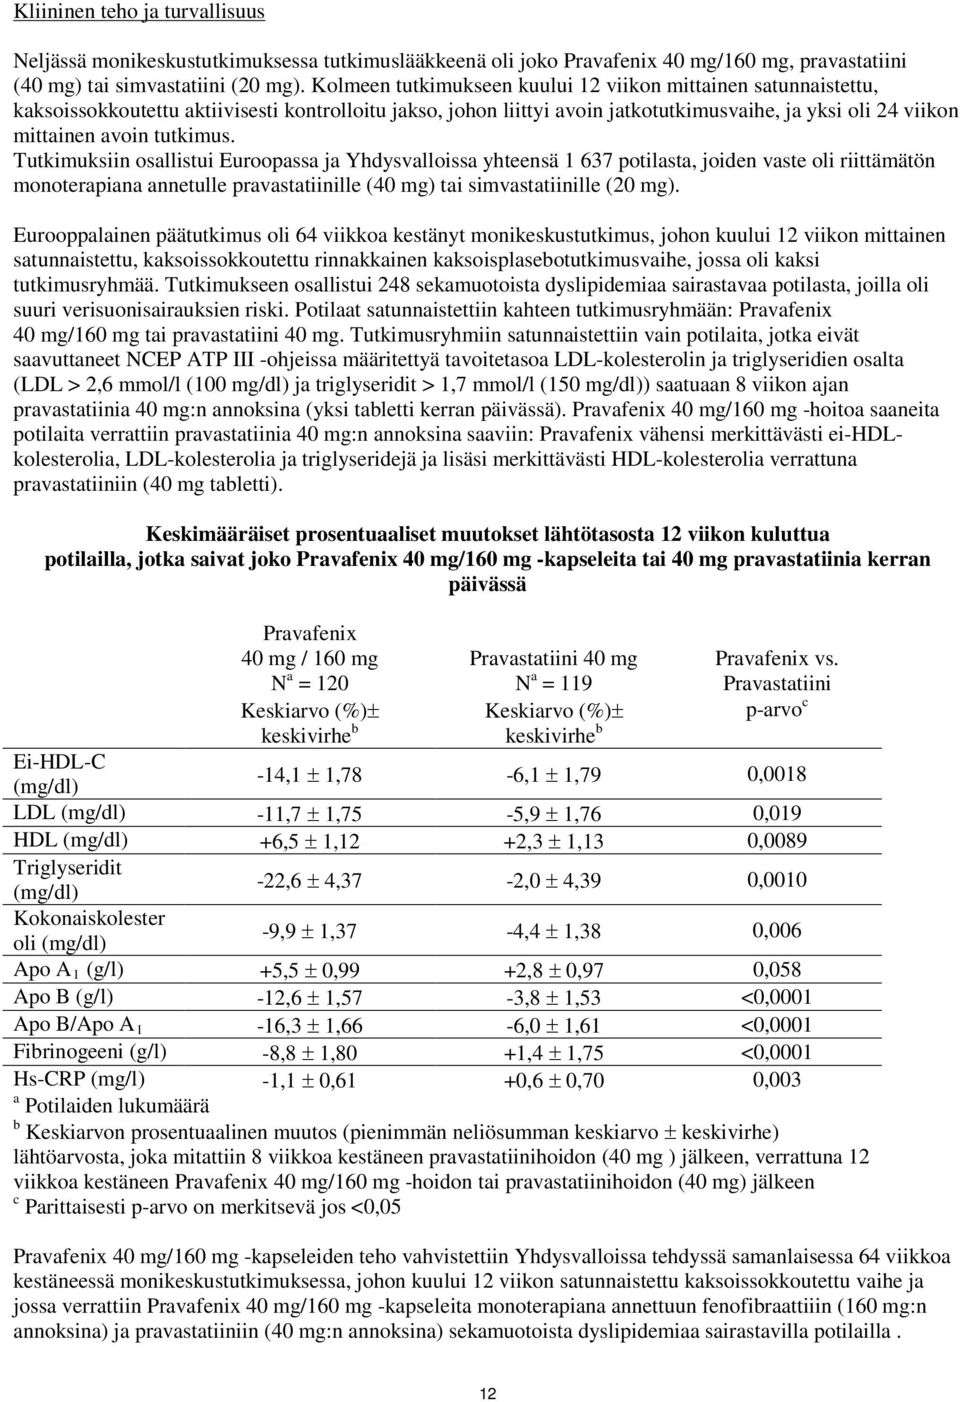 tutkimus. Tutkimuksiin osallistui Euroopassa ja Yhdysvalloissa yhteensä 1 637 potilasta, joiden vaste oli riittämätön monoterapiana annetulle pravastatiinille (40 mg) tai simvastatiinille (20 mg).